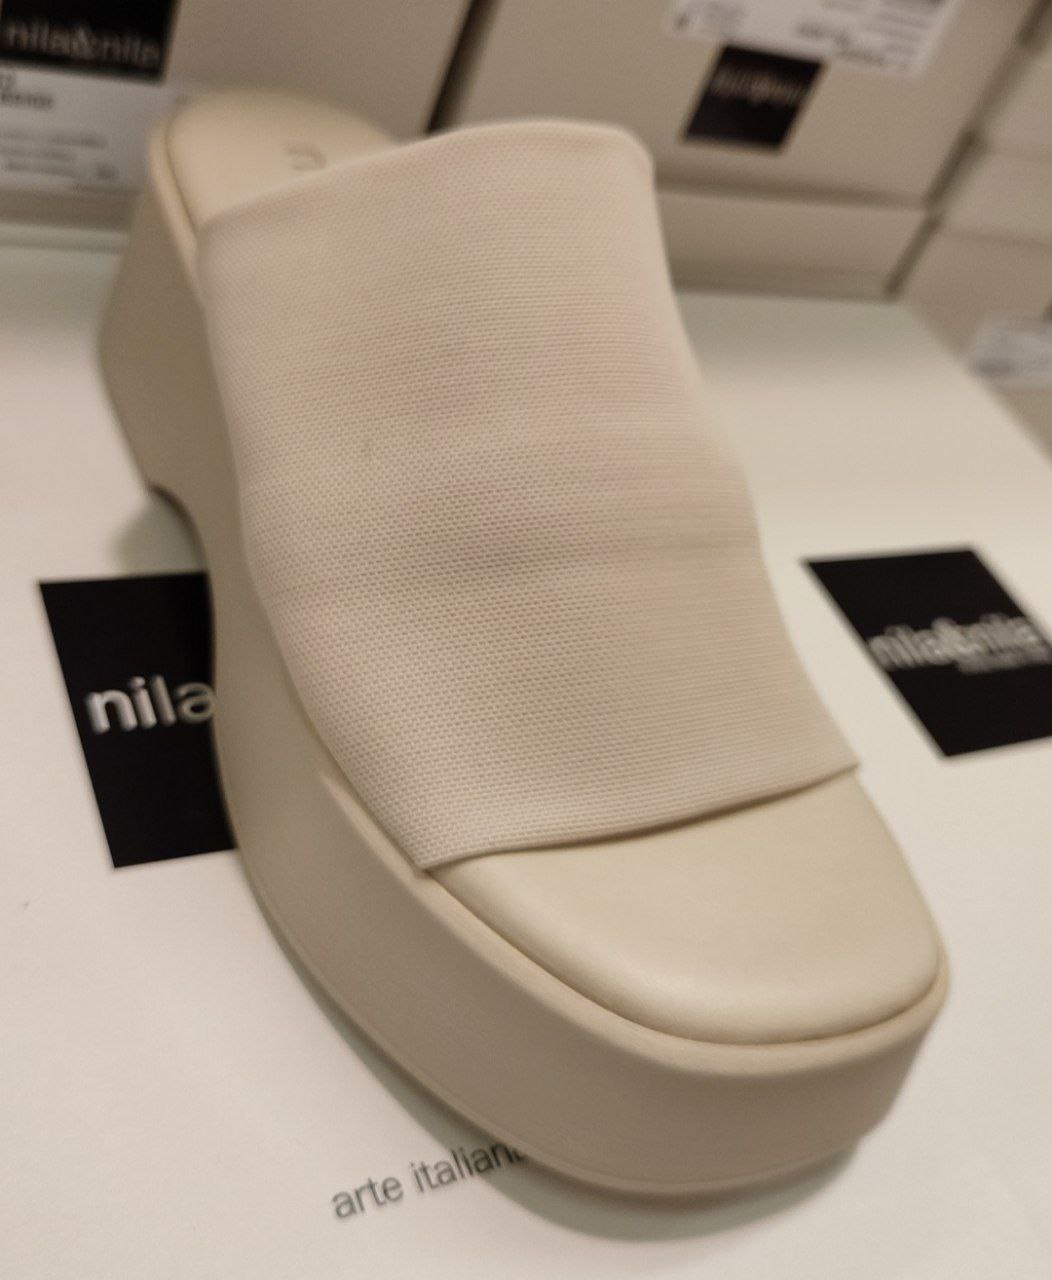 Итальянская одежда, бренд Nila Nila - Обувь, арт. 72838998